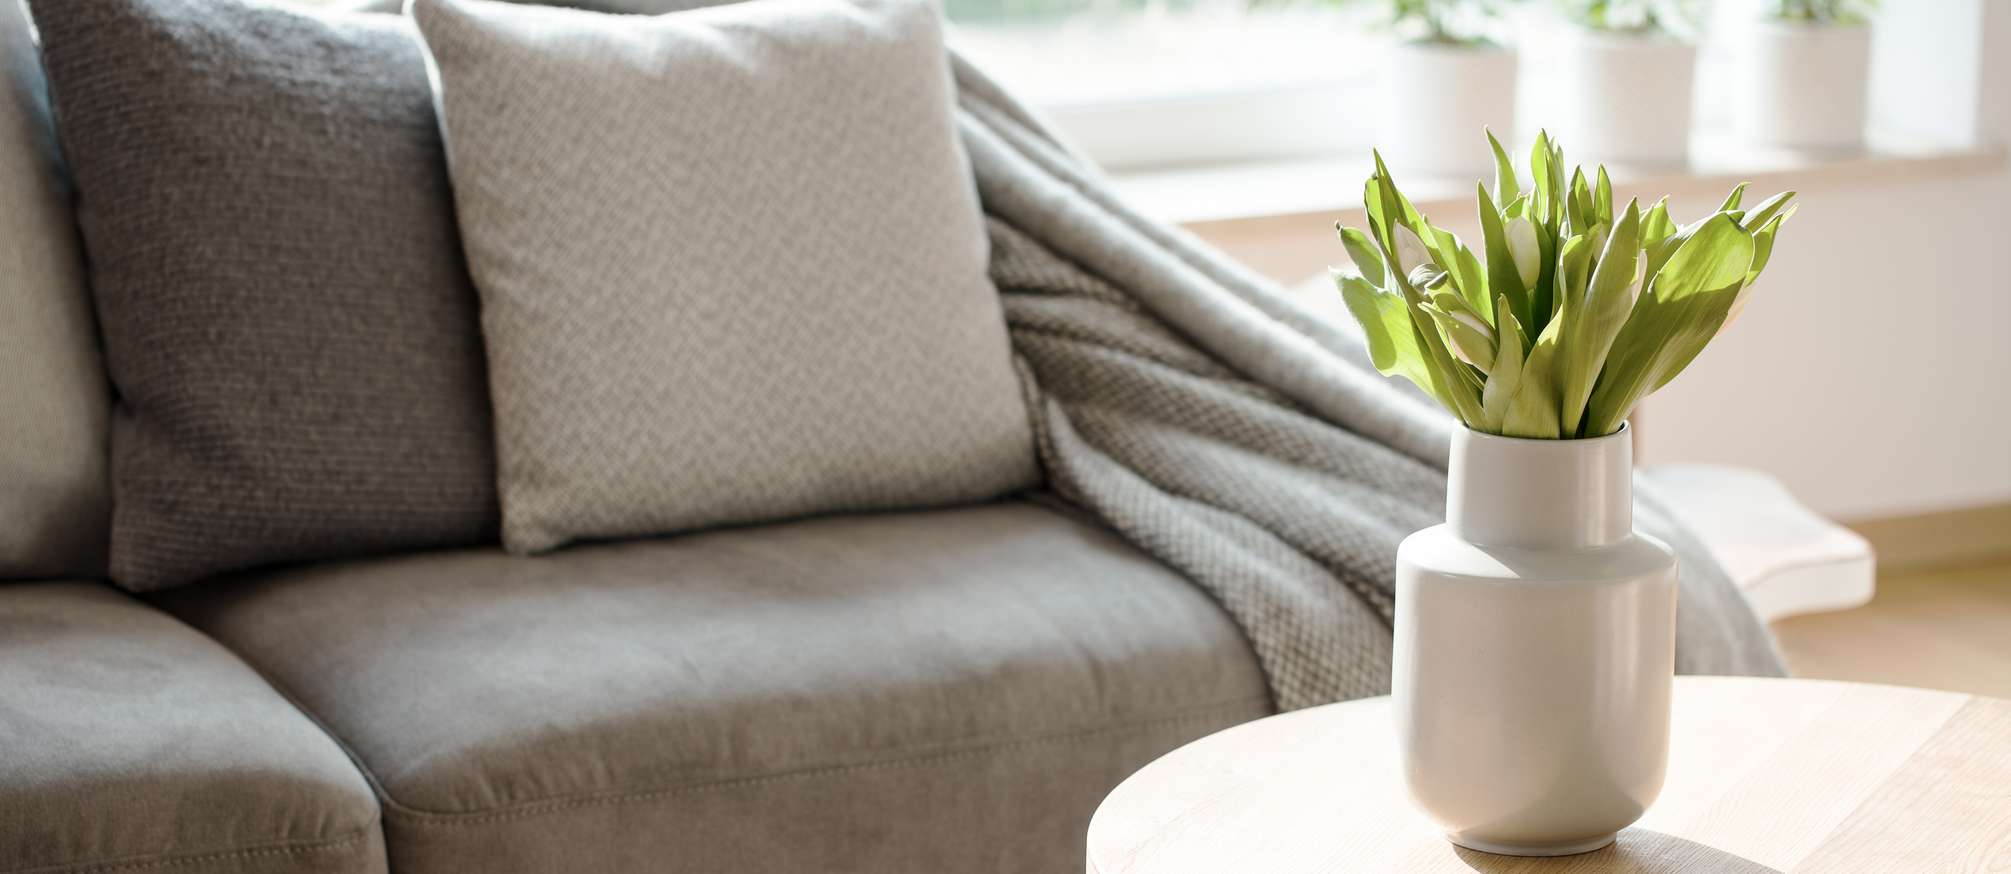 Allianz - Mietsachschaden: Beistelltisch mit Pflanzer vor grauer Couch